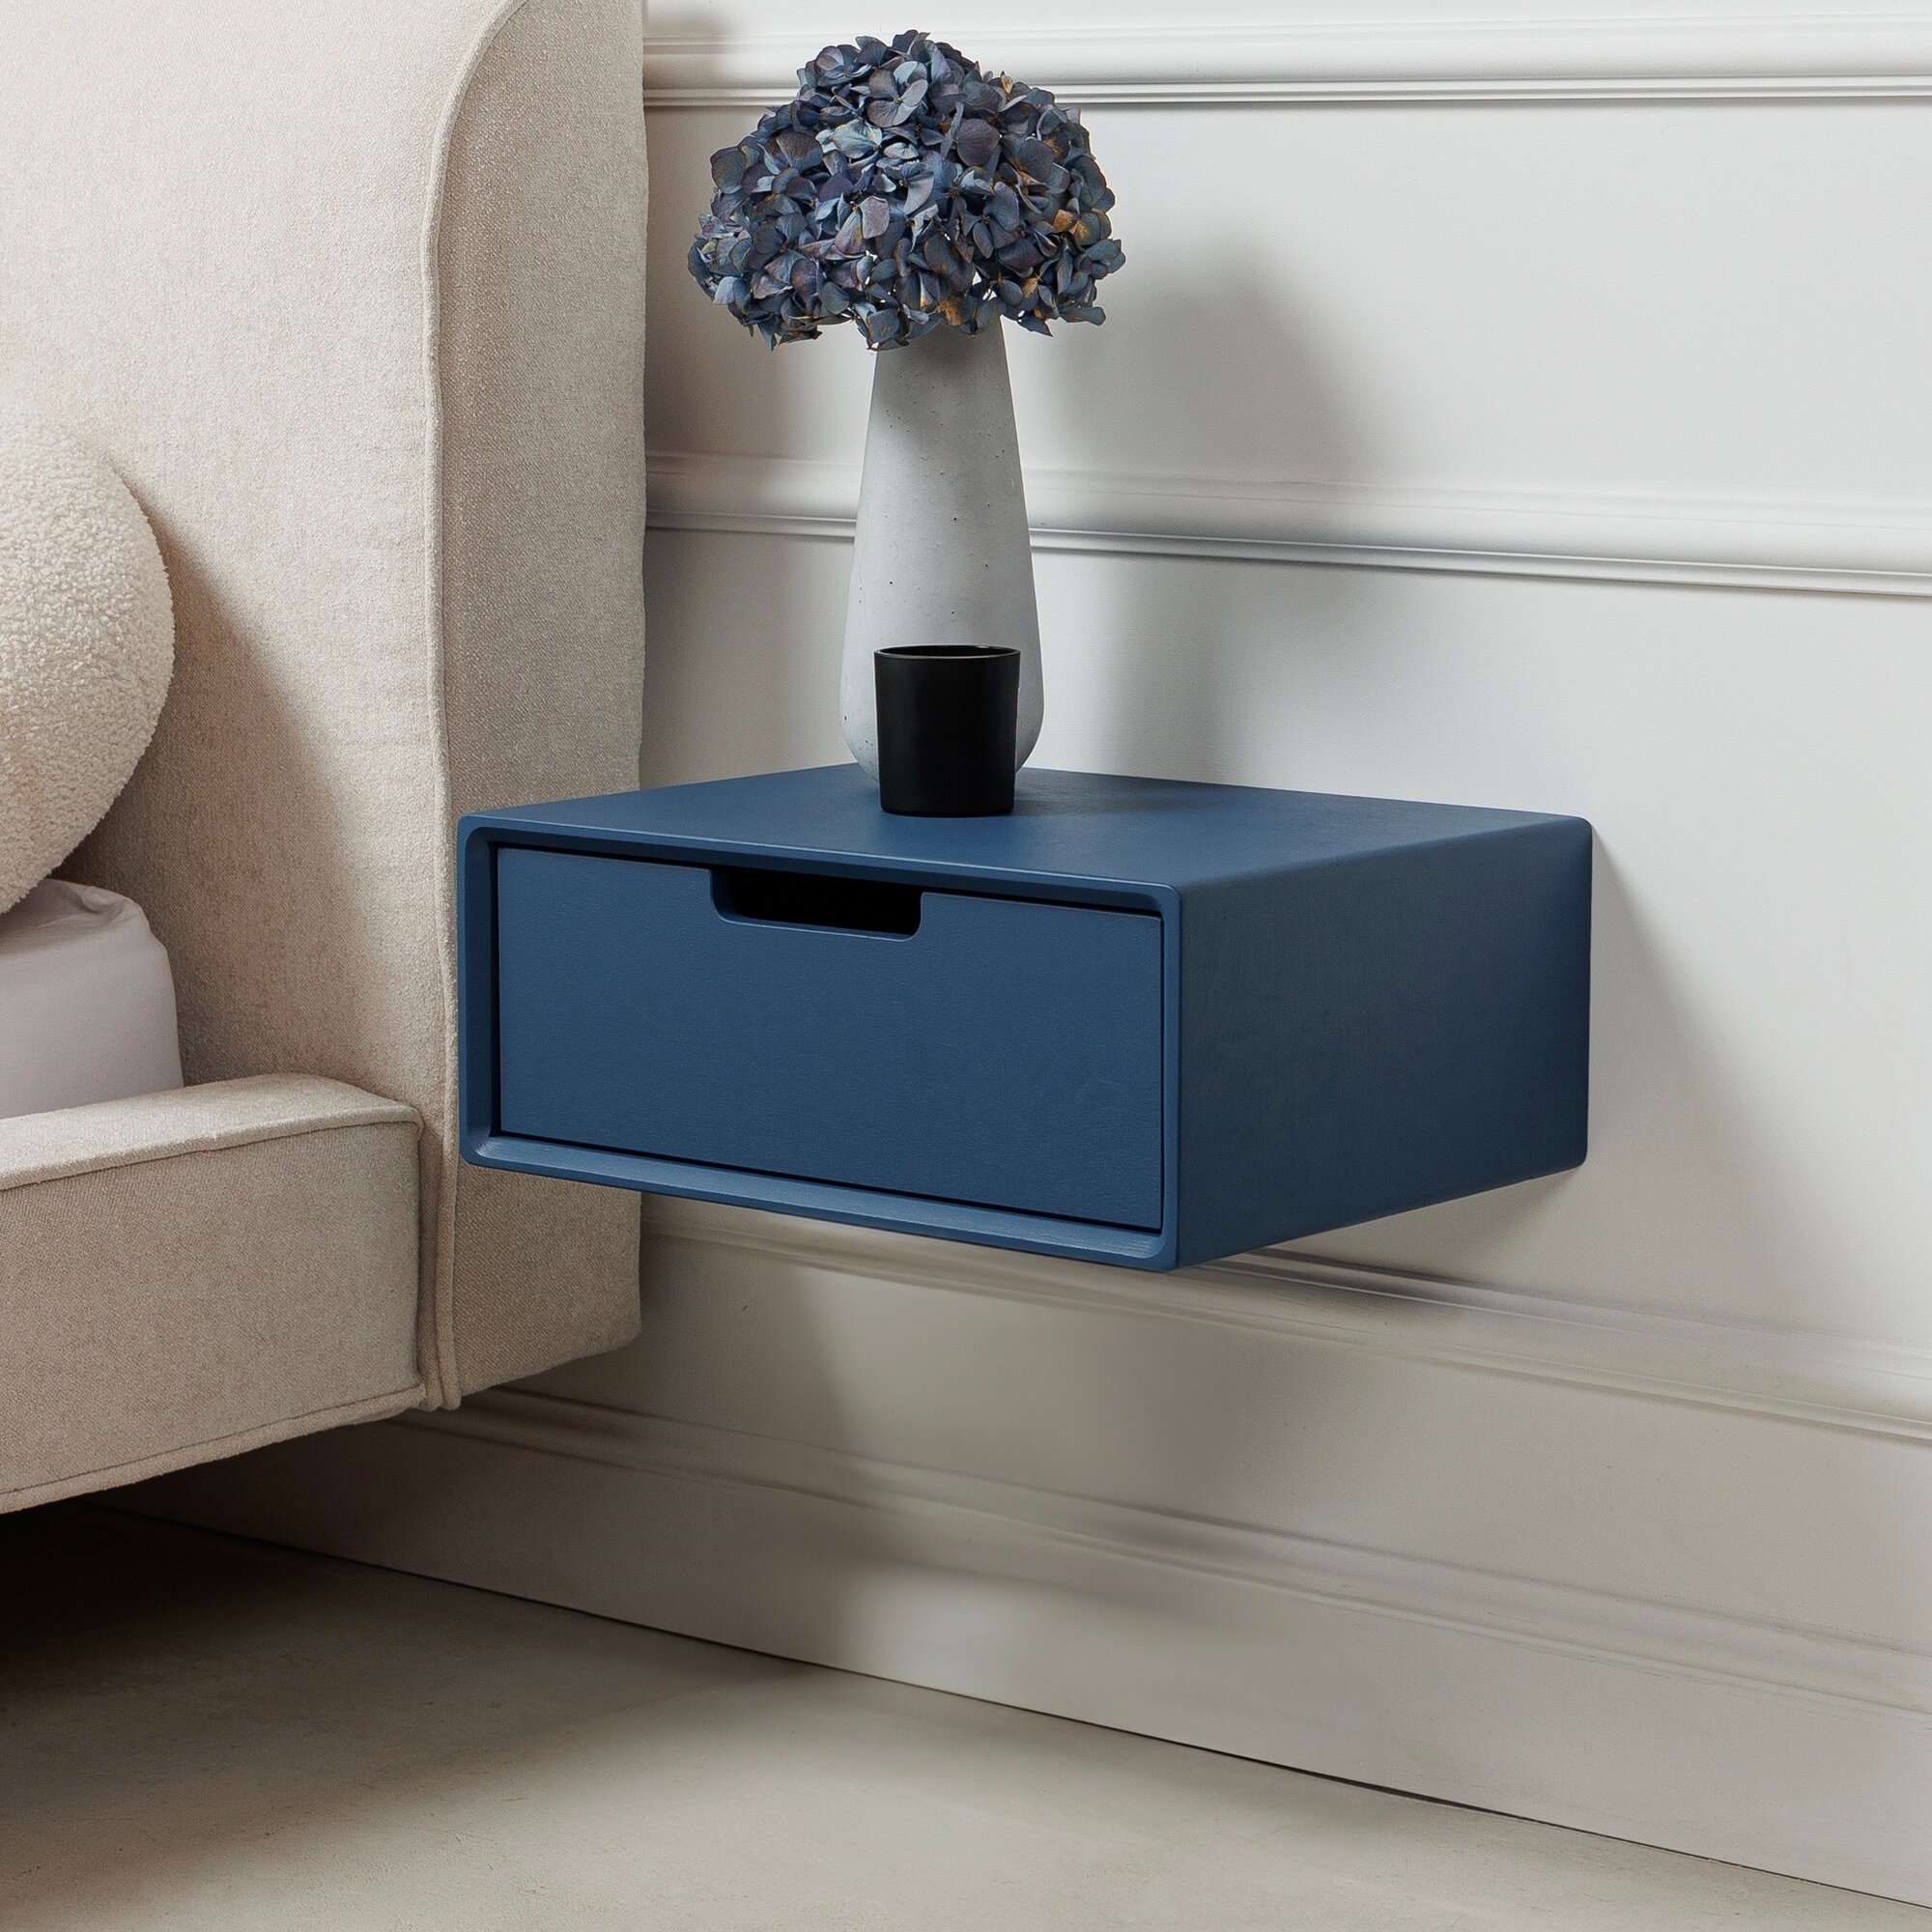 Тумба прикроватная подвесная с выдвижным ящиком из дерева (как IKEA), тумбочка полка консоль деревянная навесная офисная синего цвета, эмаль